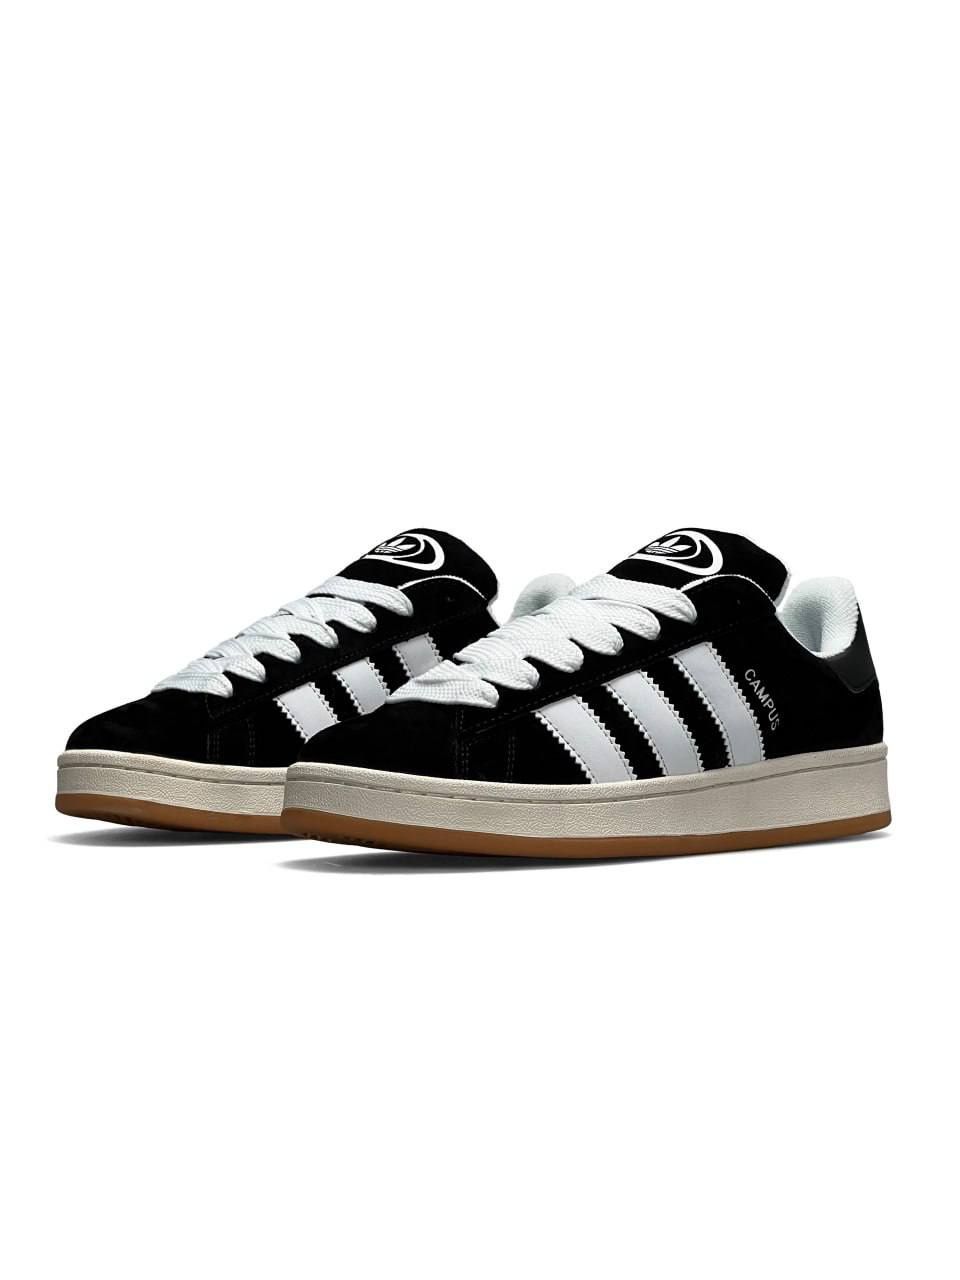 Кросівки Adidas Campus 00s black / white | Кроссовки адидас білі чорні